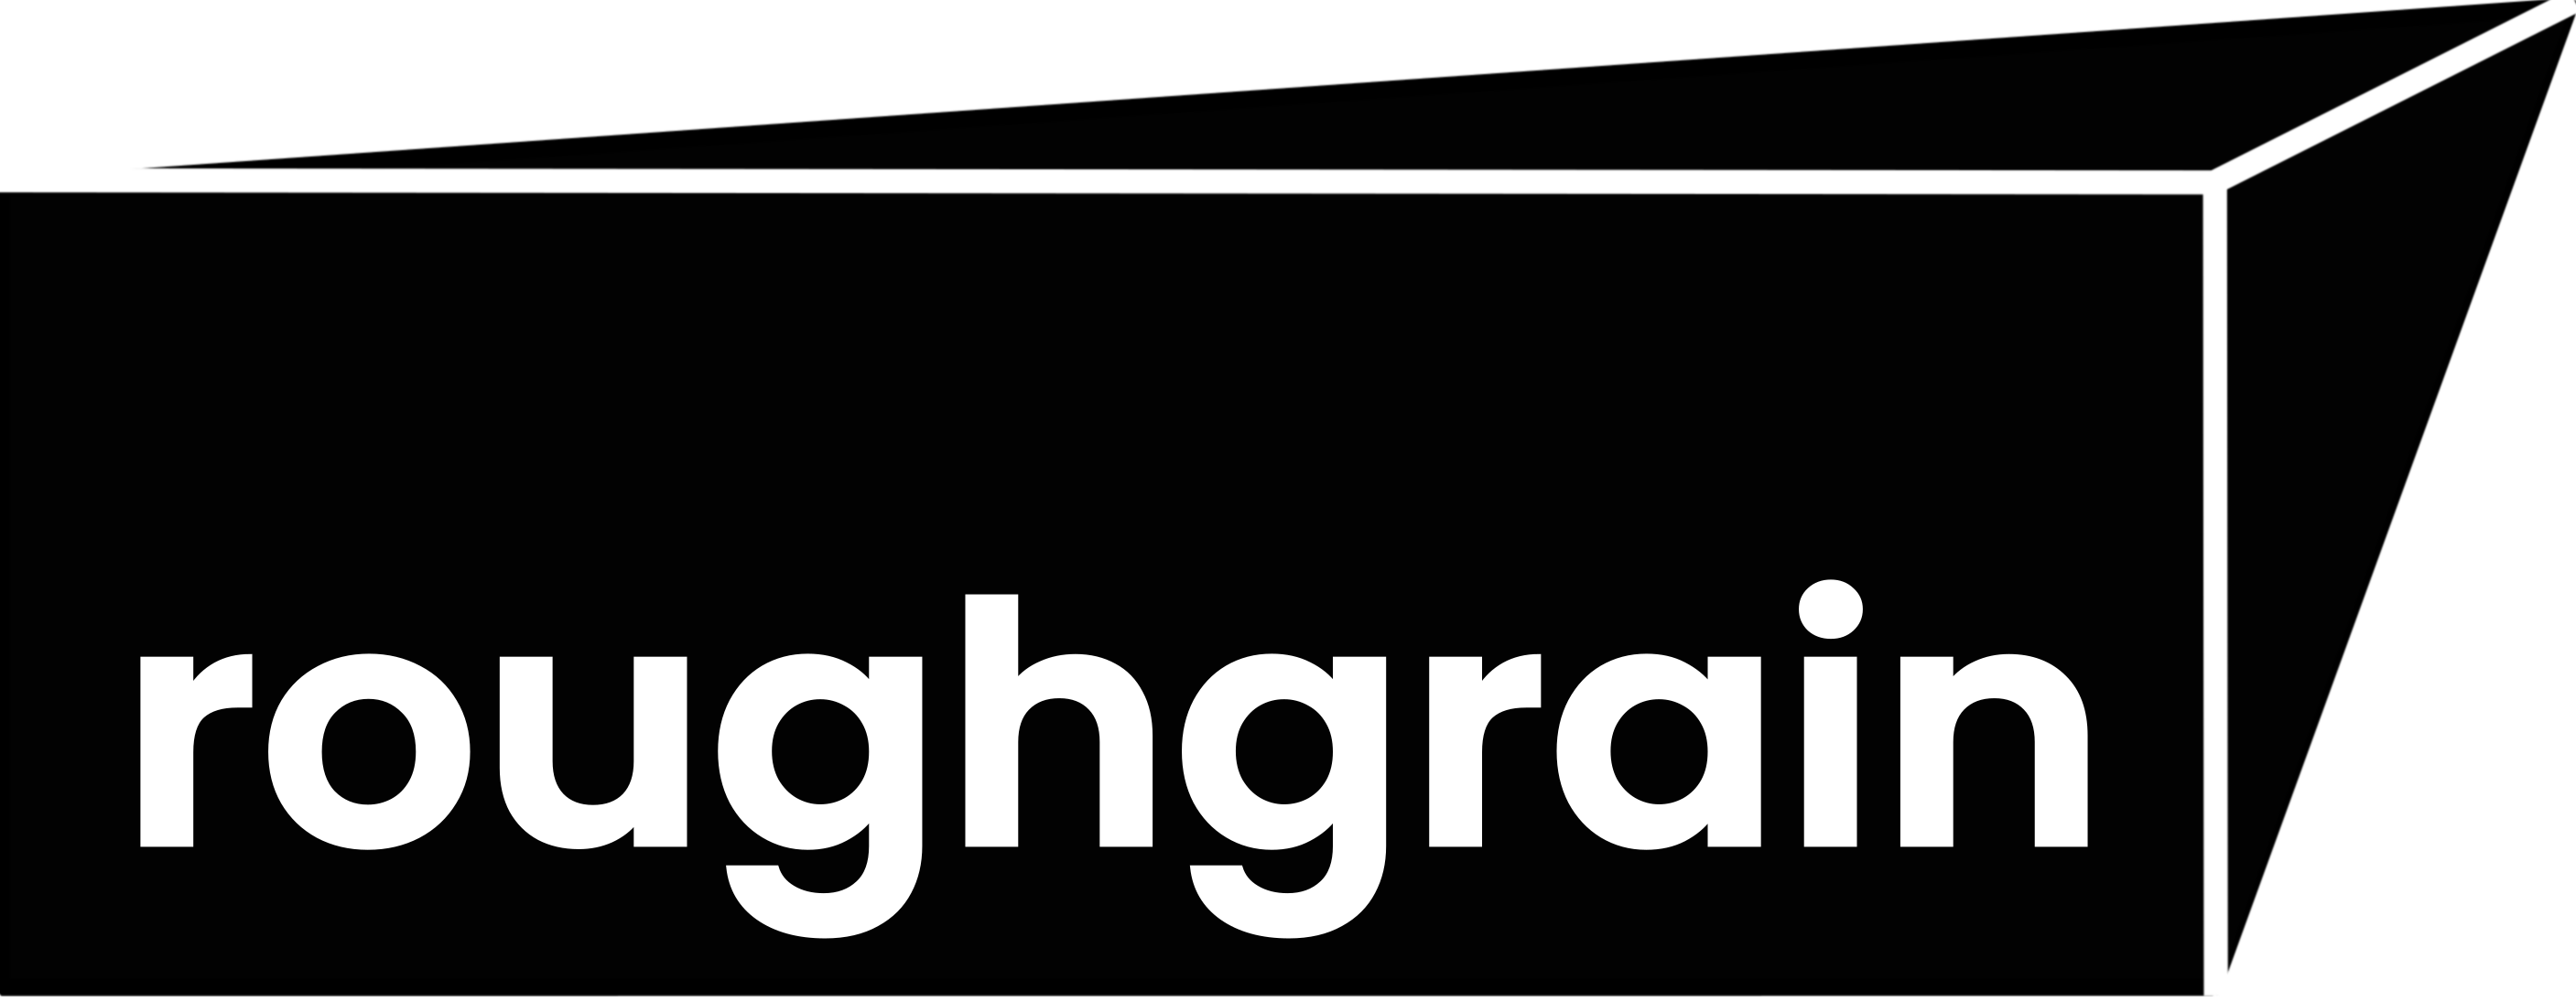 Roughgrain logo